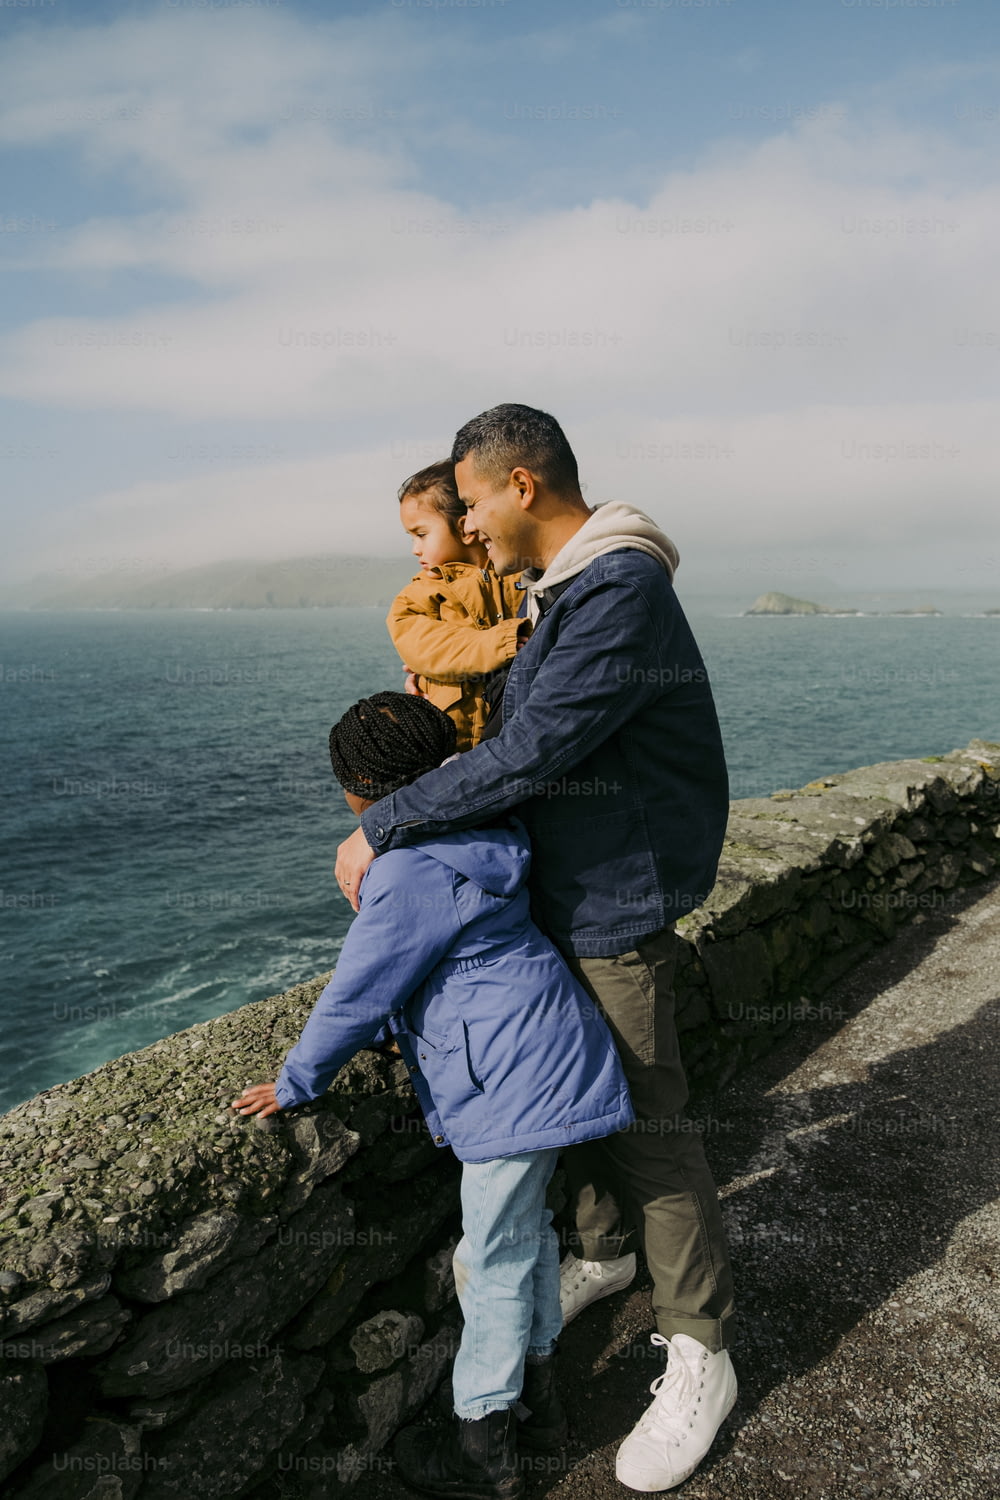 Un hombre y dos niños parados en un muro de piedra junto al océano